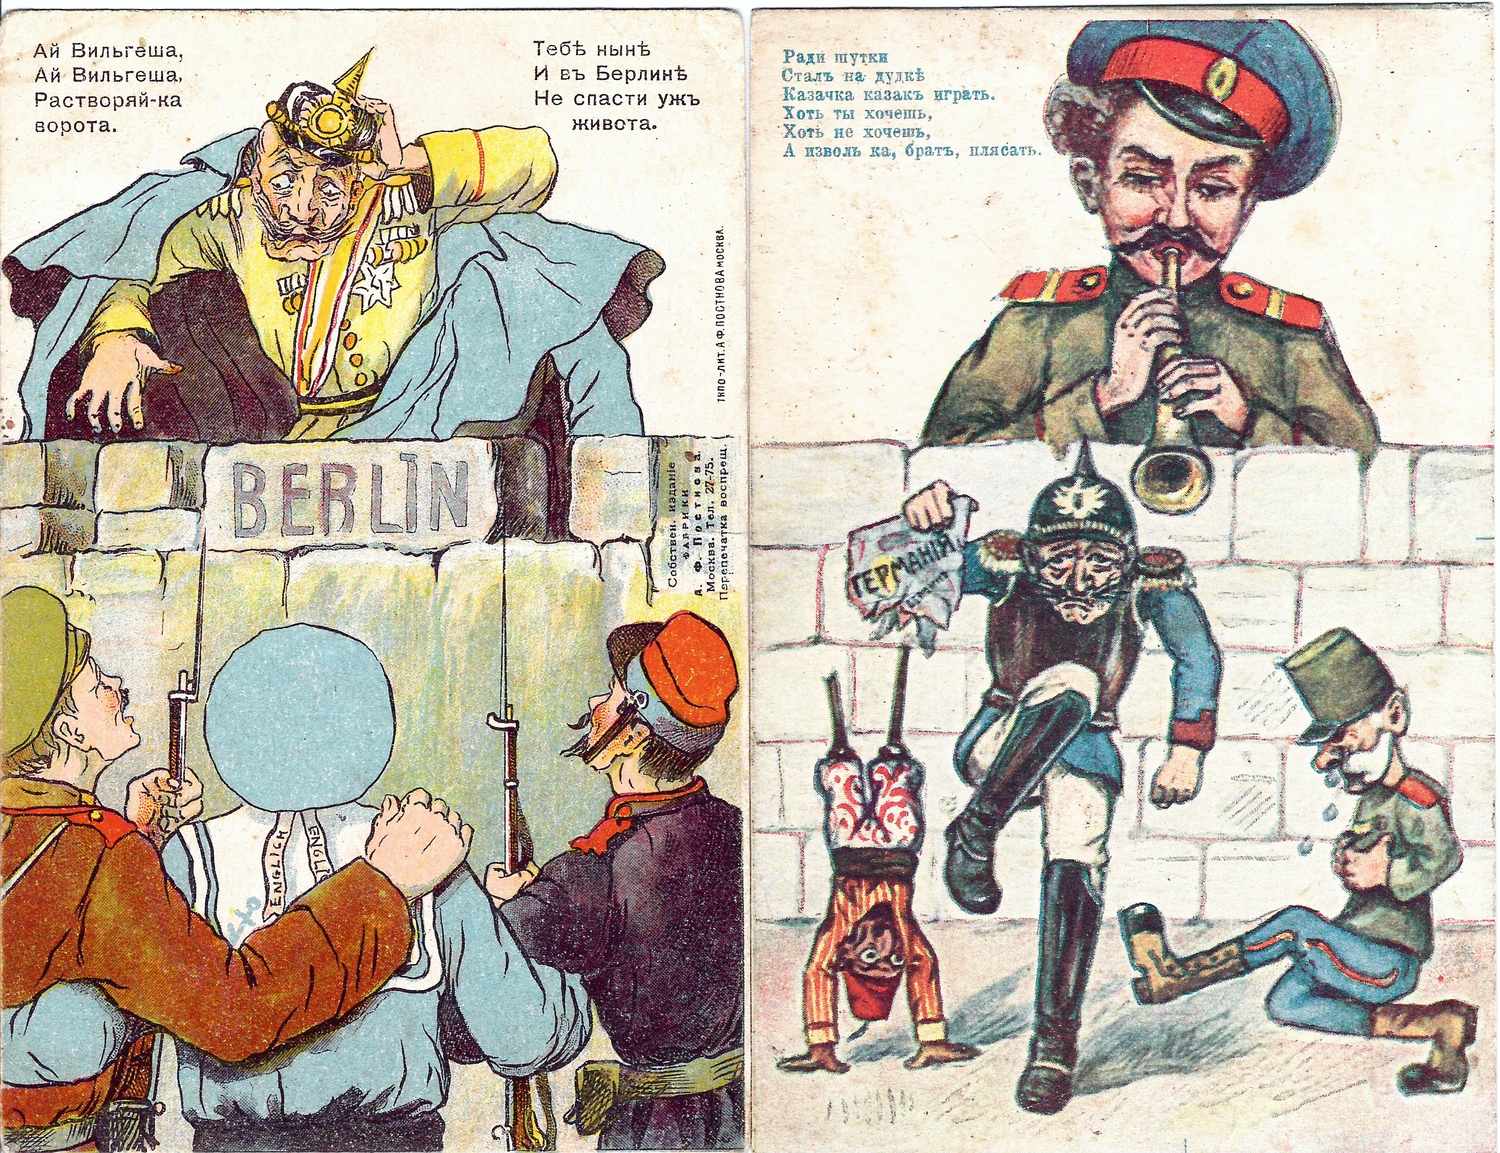 Открытки «Ай Вильгеша…», «Ради шутки…» Издание А.Ф. Постнова, 1914.